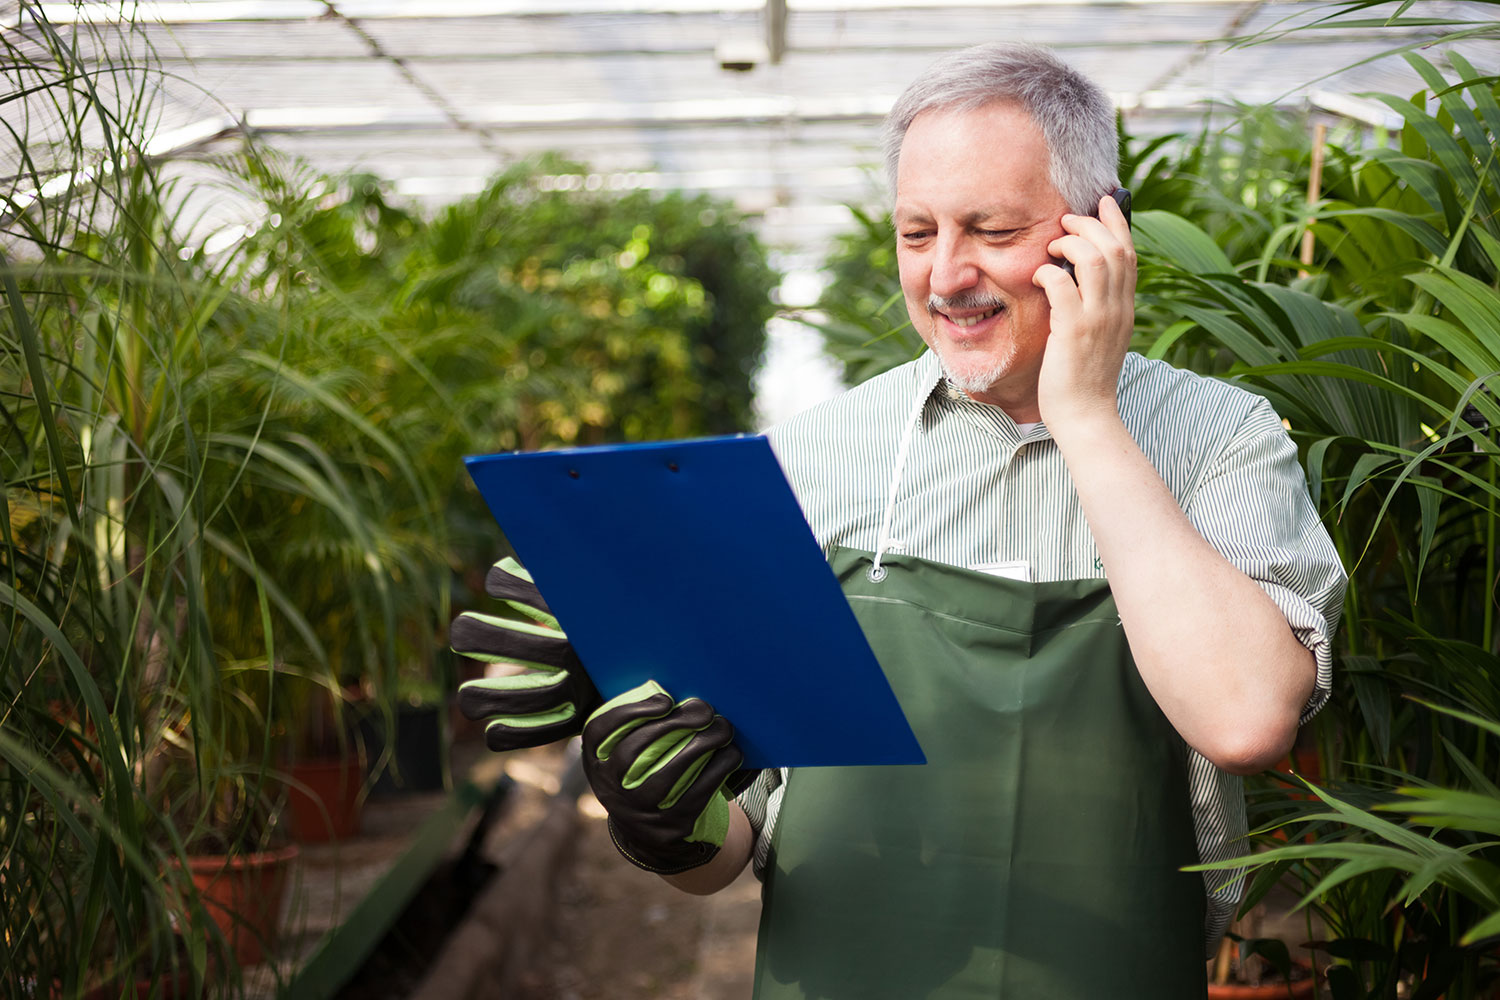 Ein Mitarbeiter des Garten-Centers. Er trägt Gartenhandschuhe und telefoniert am Handy. Er schaut auf ein blaues Klemmbrett vor ihm und lächelt freundlich.